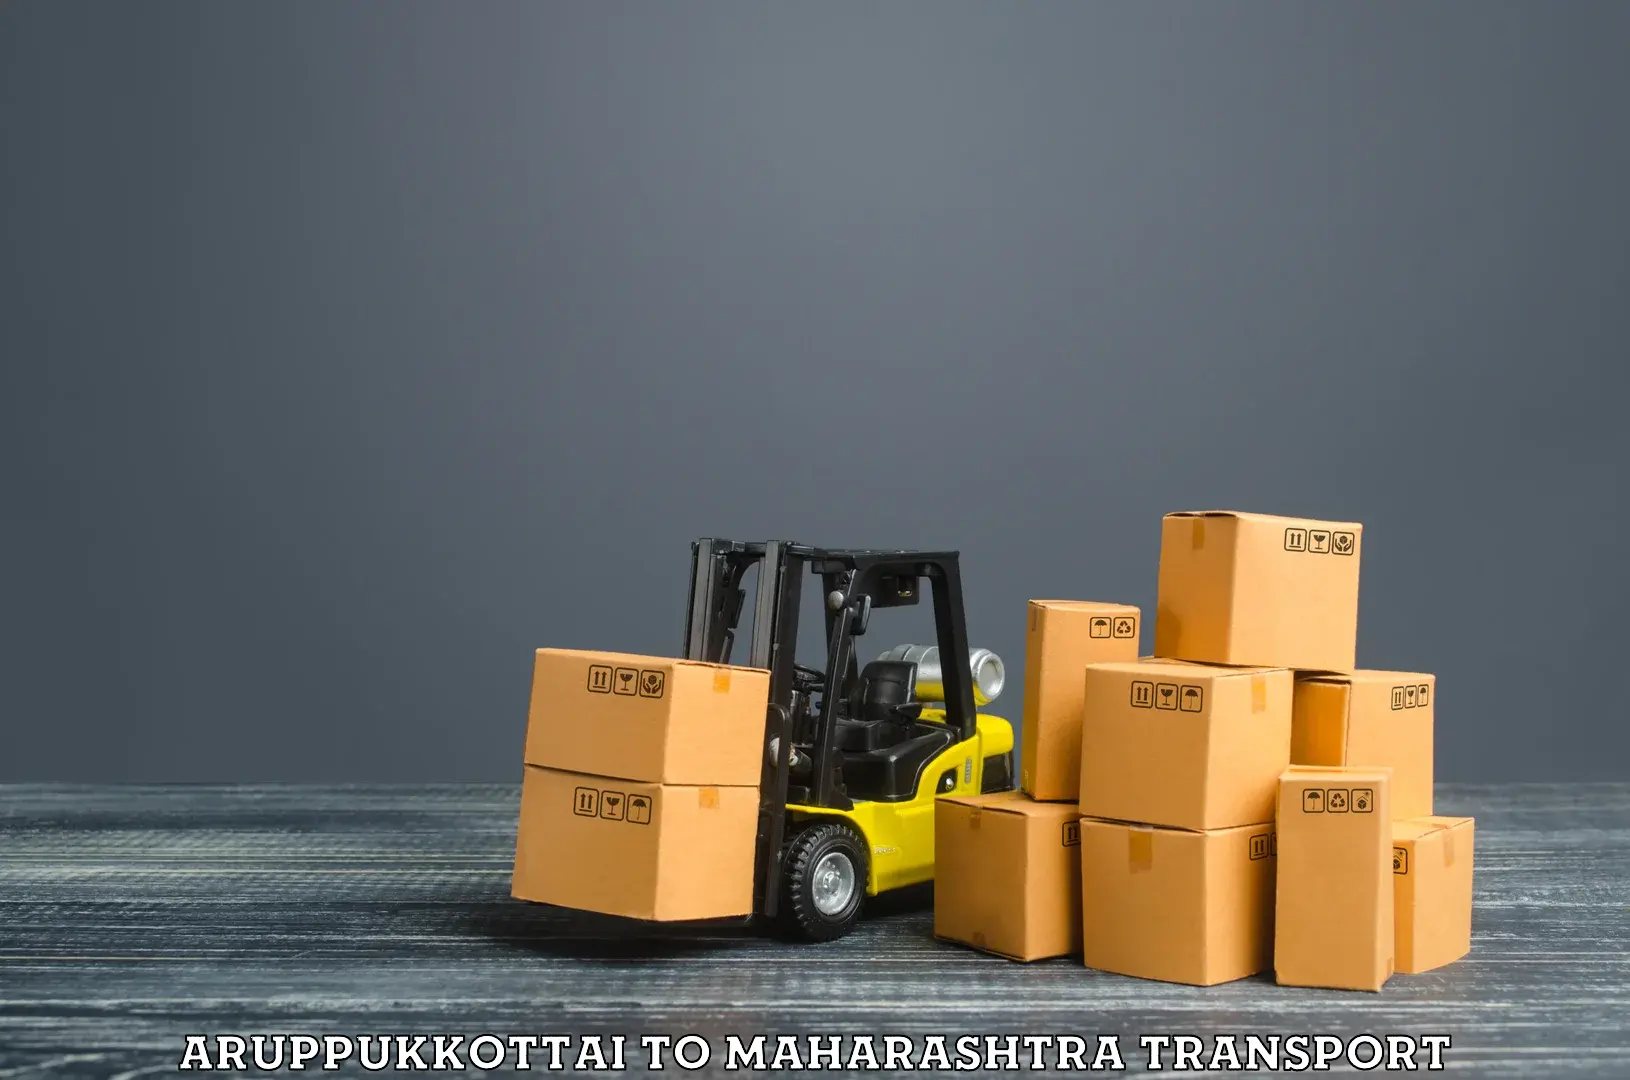 Container transport service Aruppukkottai to Ahmedpur